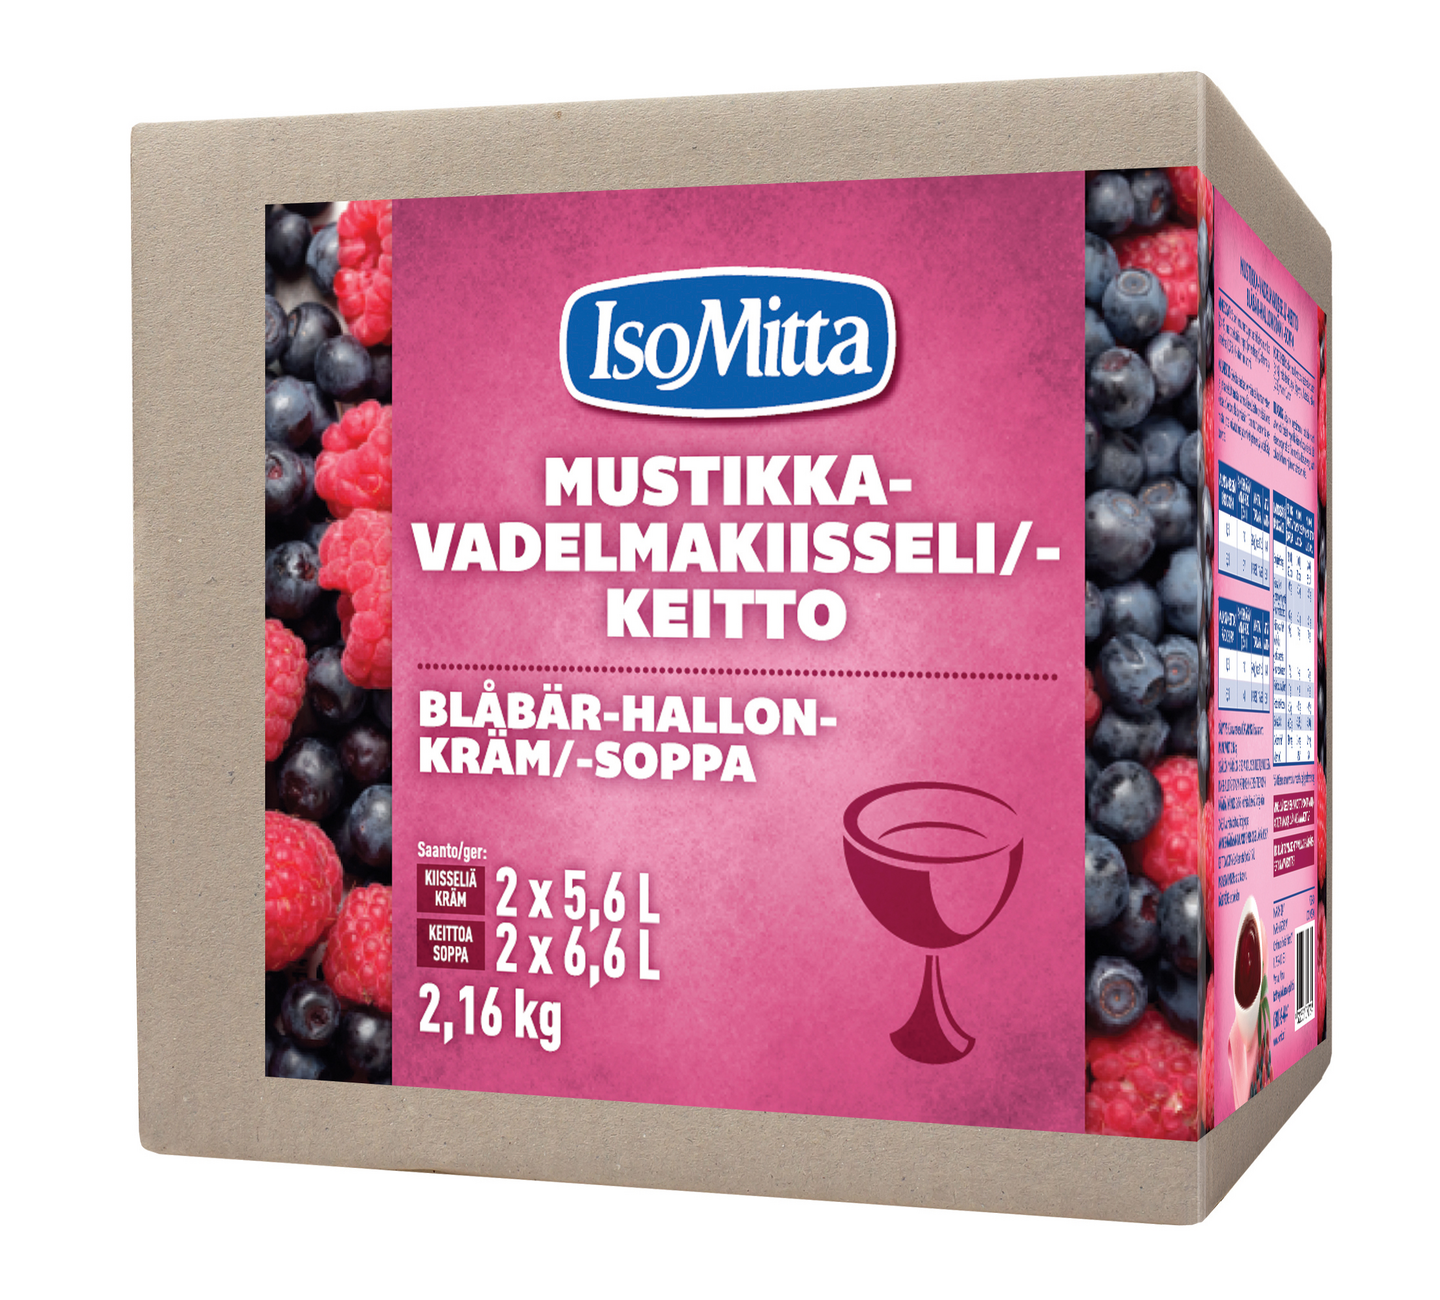 IsoMitta Mustikka-vadelmakiisseli/-keitto 2x1080g